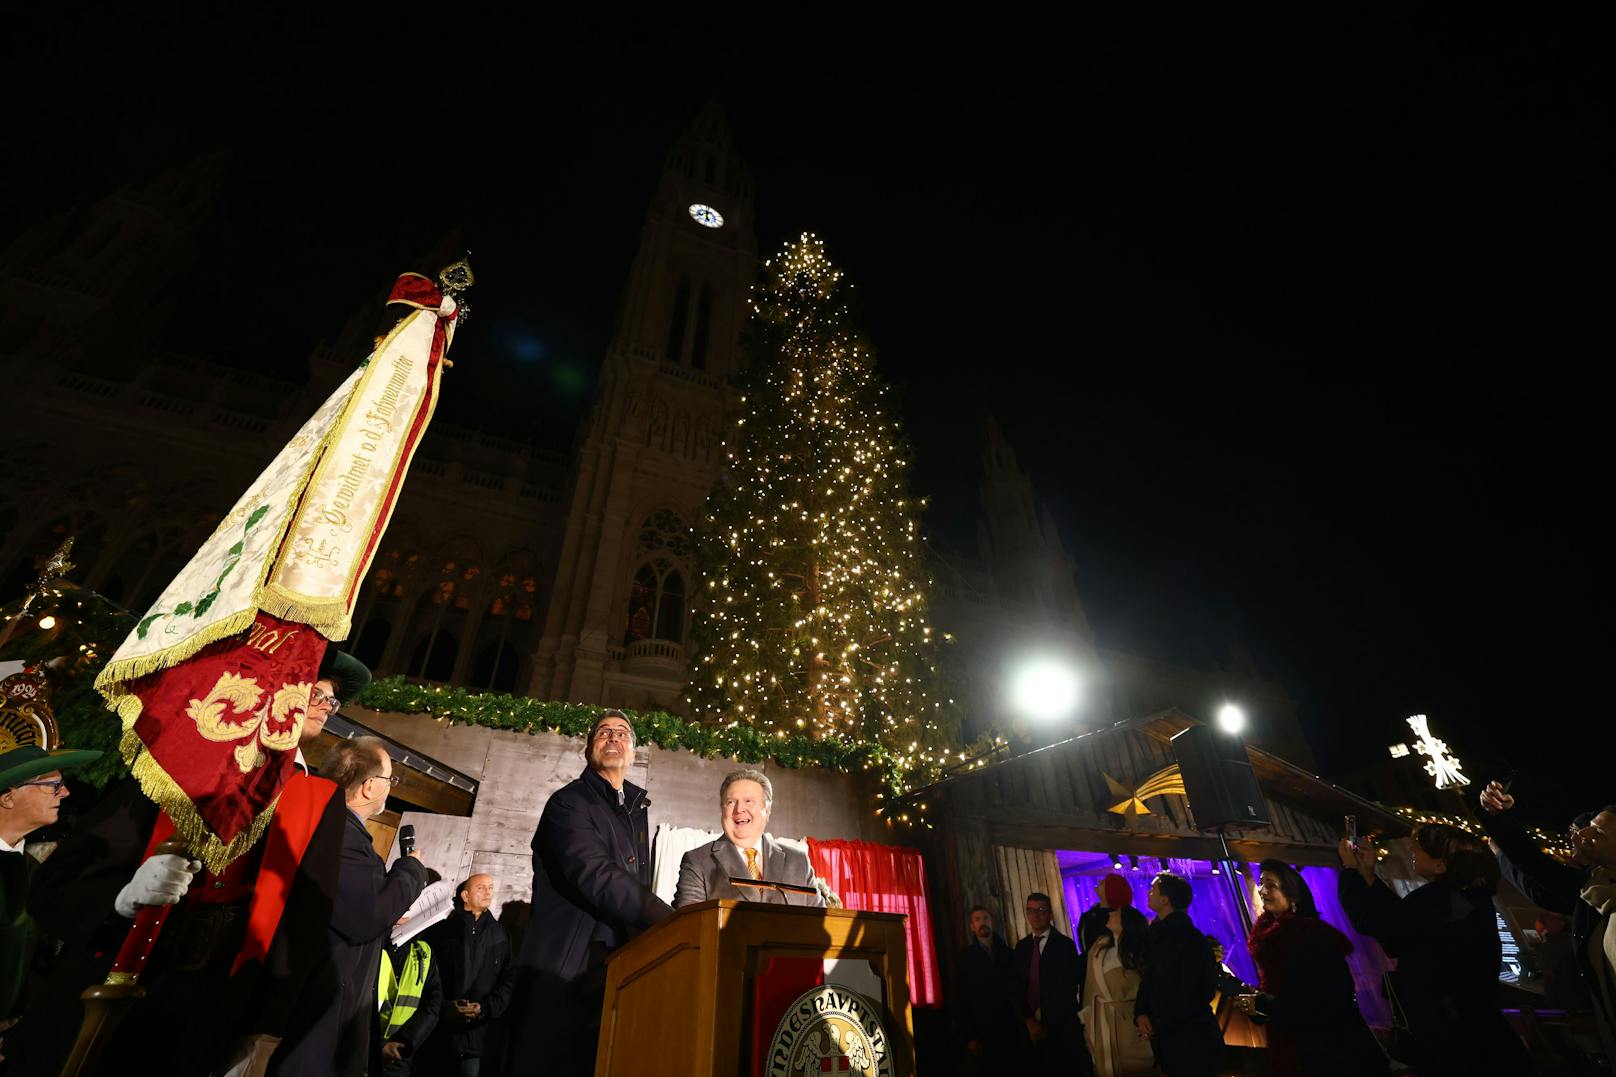 Südtirols Landeshauptmann Arno Kompatscher und Wiens Bürgermeister Michael Ludwig illuminieren die Weihnachtsbeleuchtung.